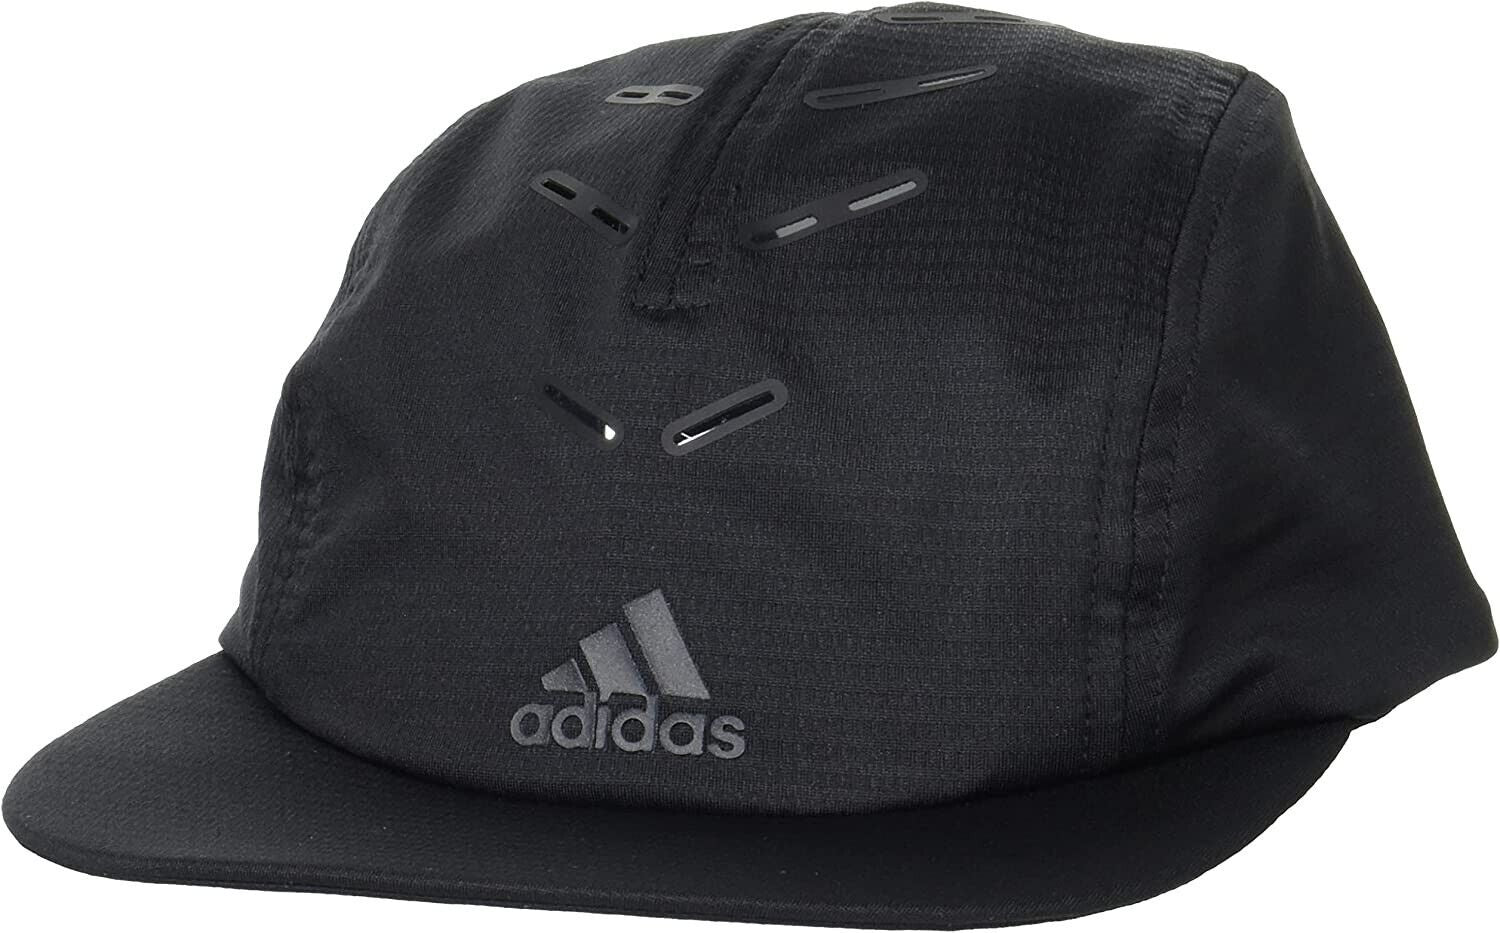 Adidas RUN 4P Cap - Black